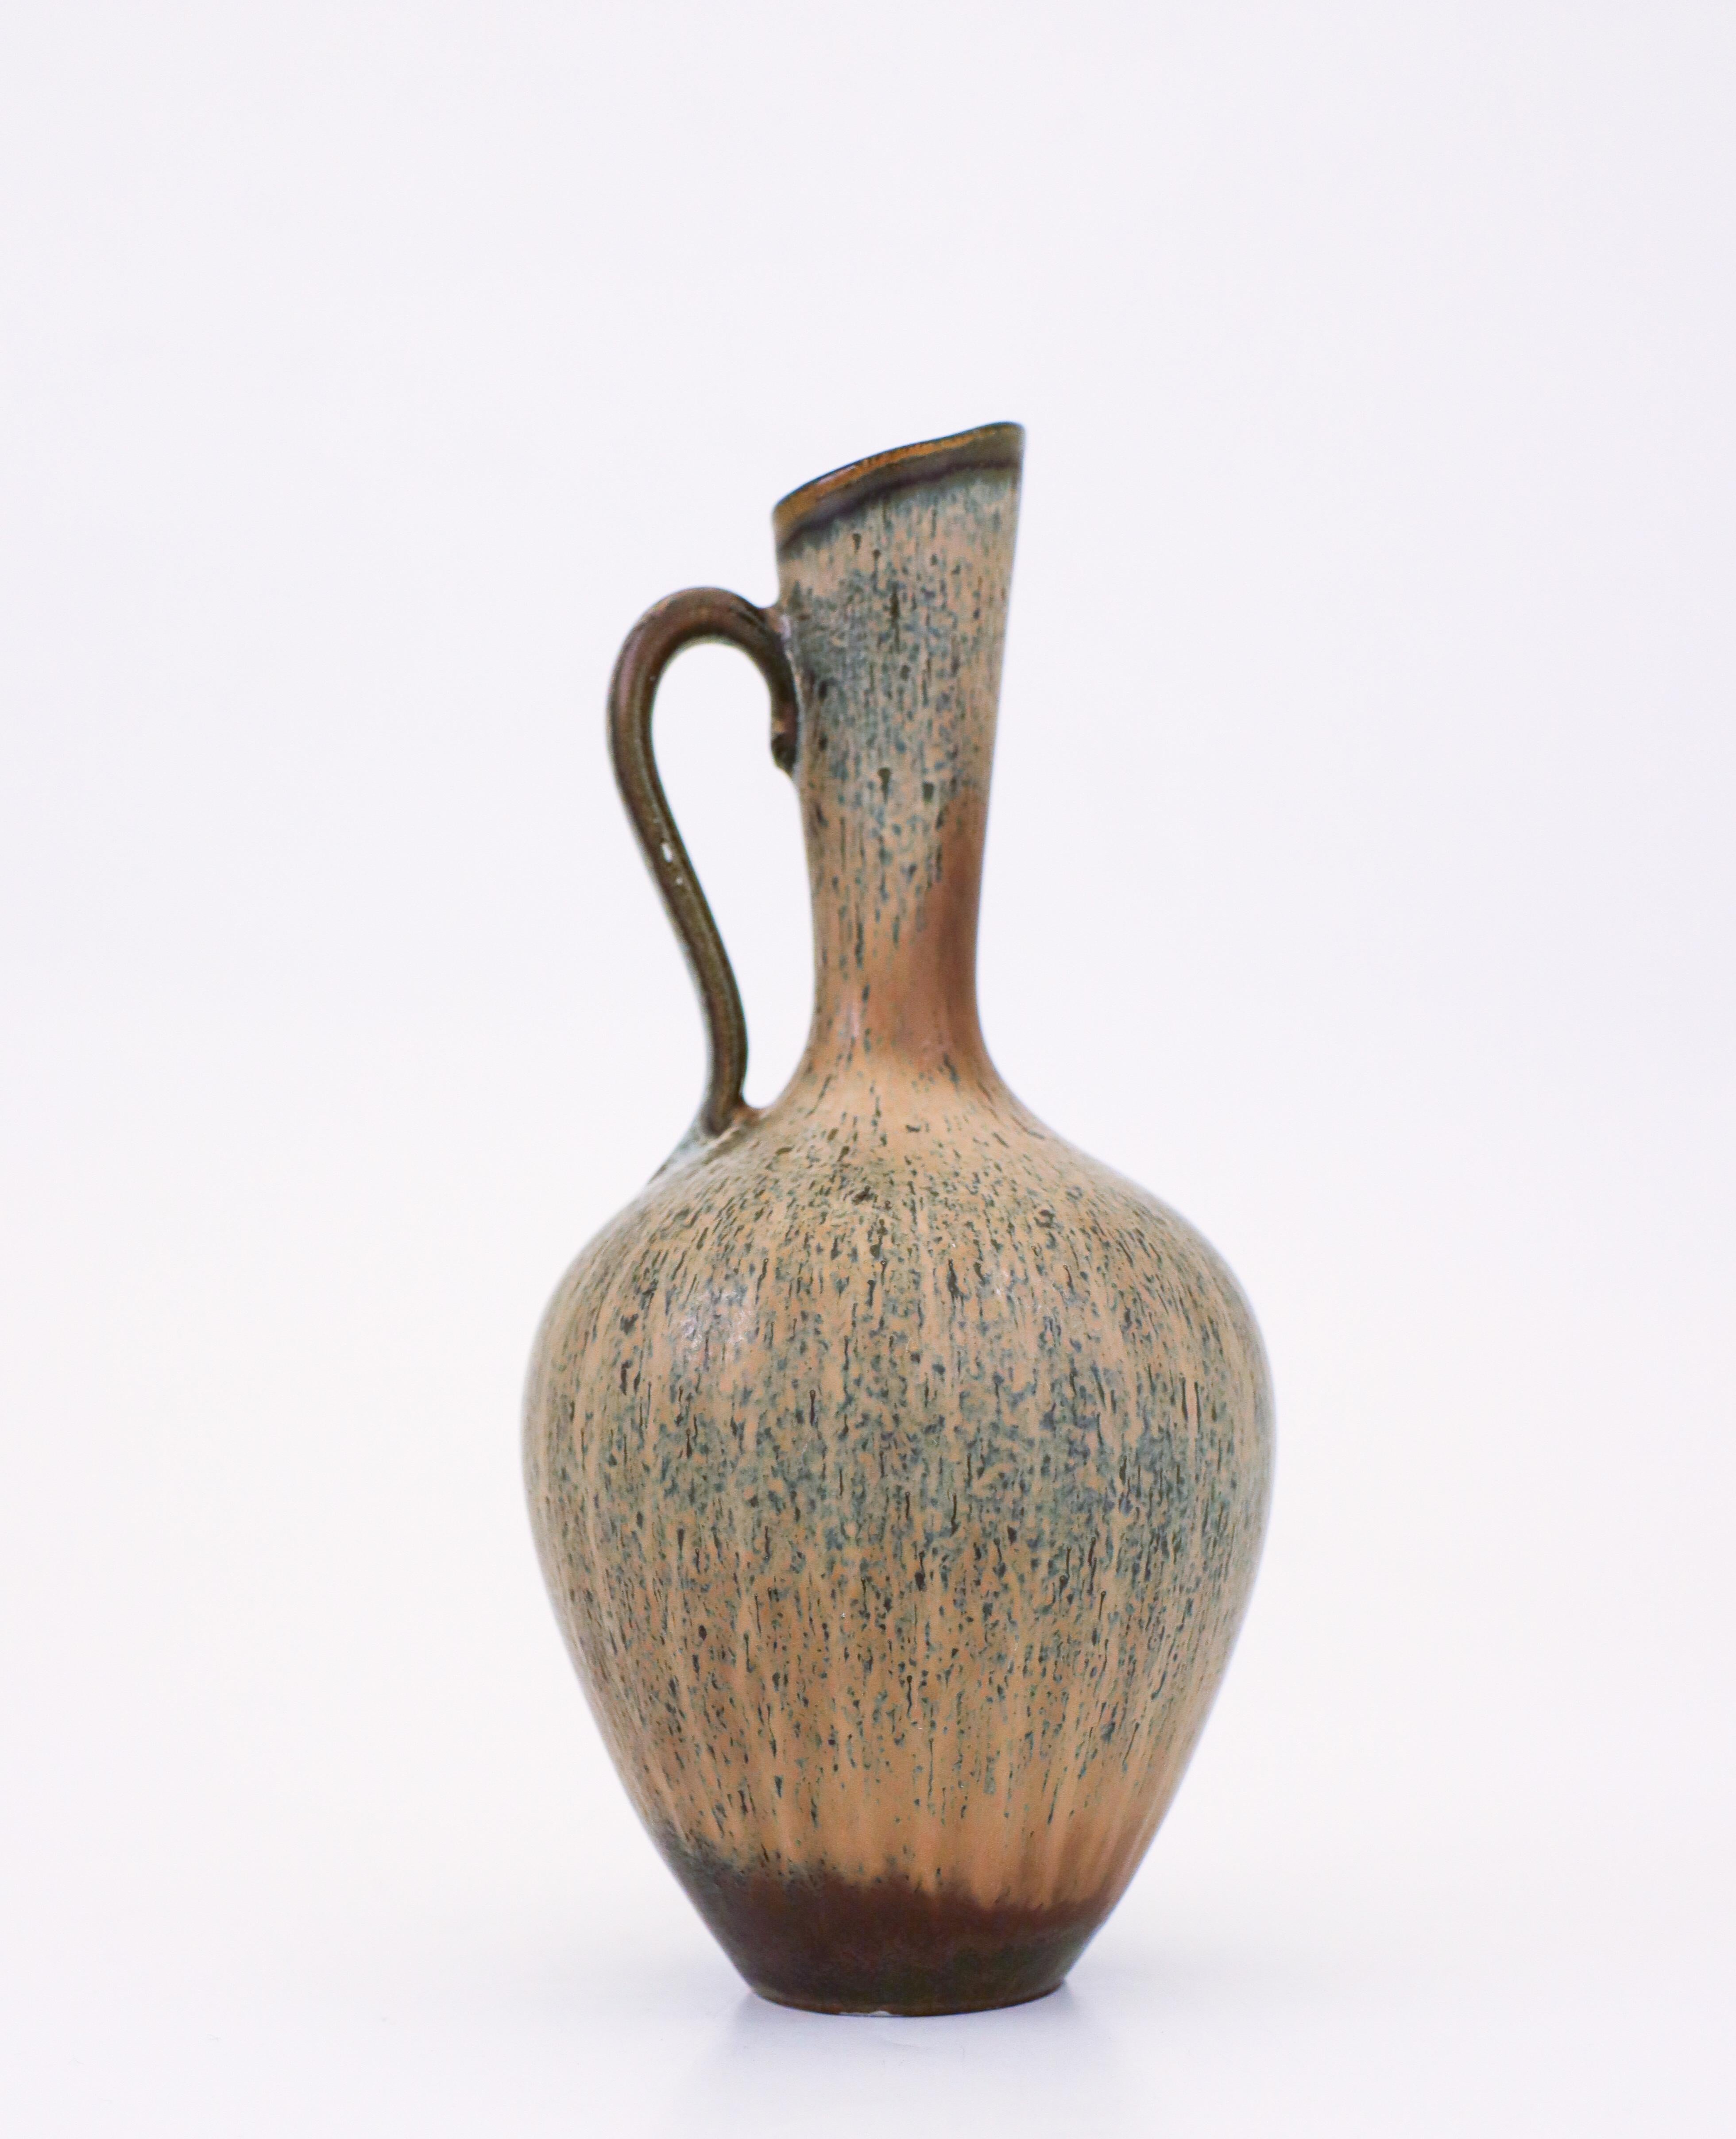 Un vase en céramique mouchetée de gris, conçu par Gunnar Nylund chez Rörstrand. Il mesure 17 cm de haut et est en excellent état. Le vase est marqué comme le montre la photo et il est marqué comme étant de 1ère qualité. 

Gunnar Nylund est né à